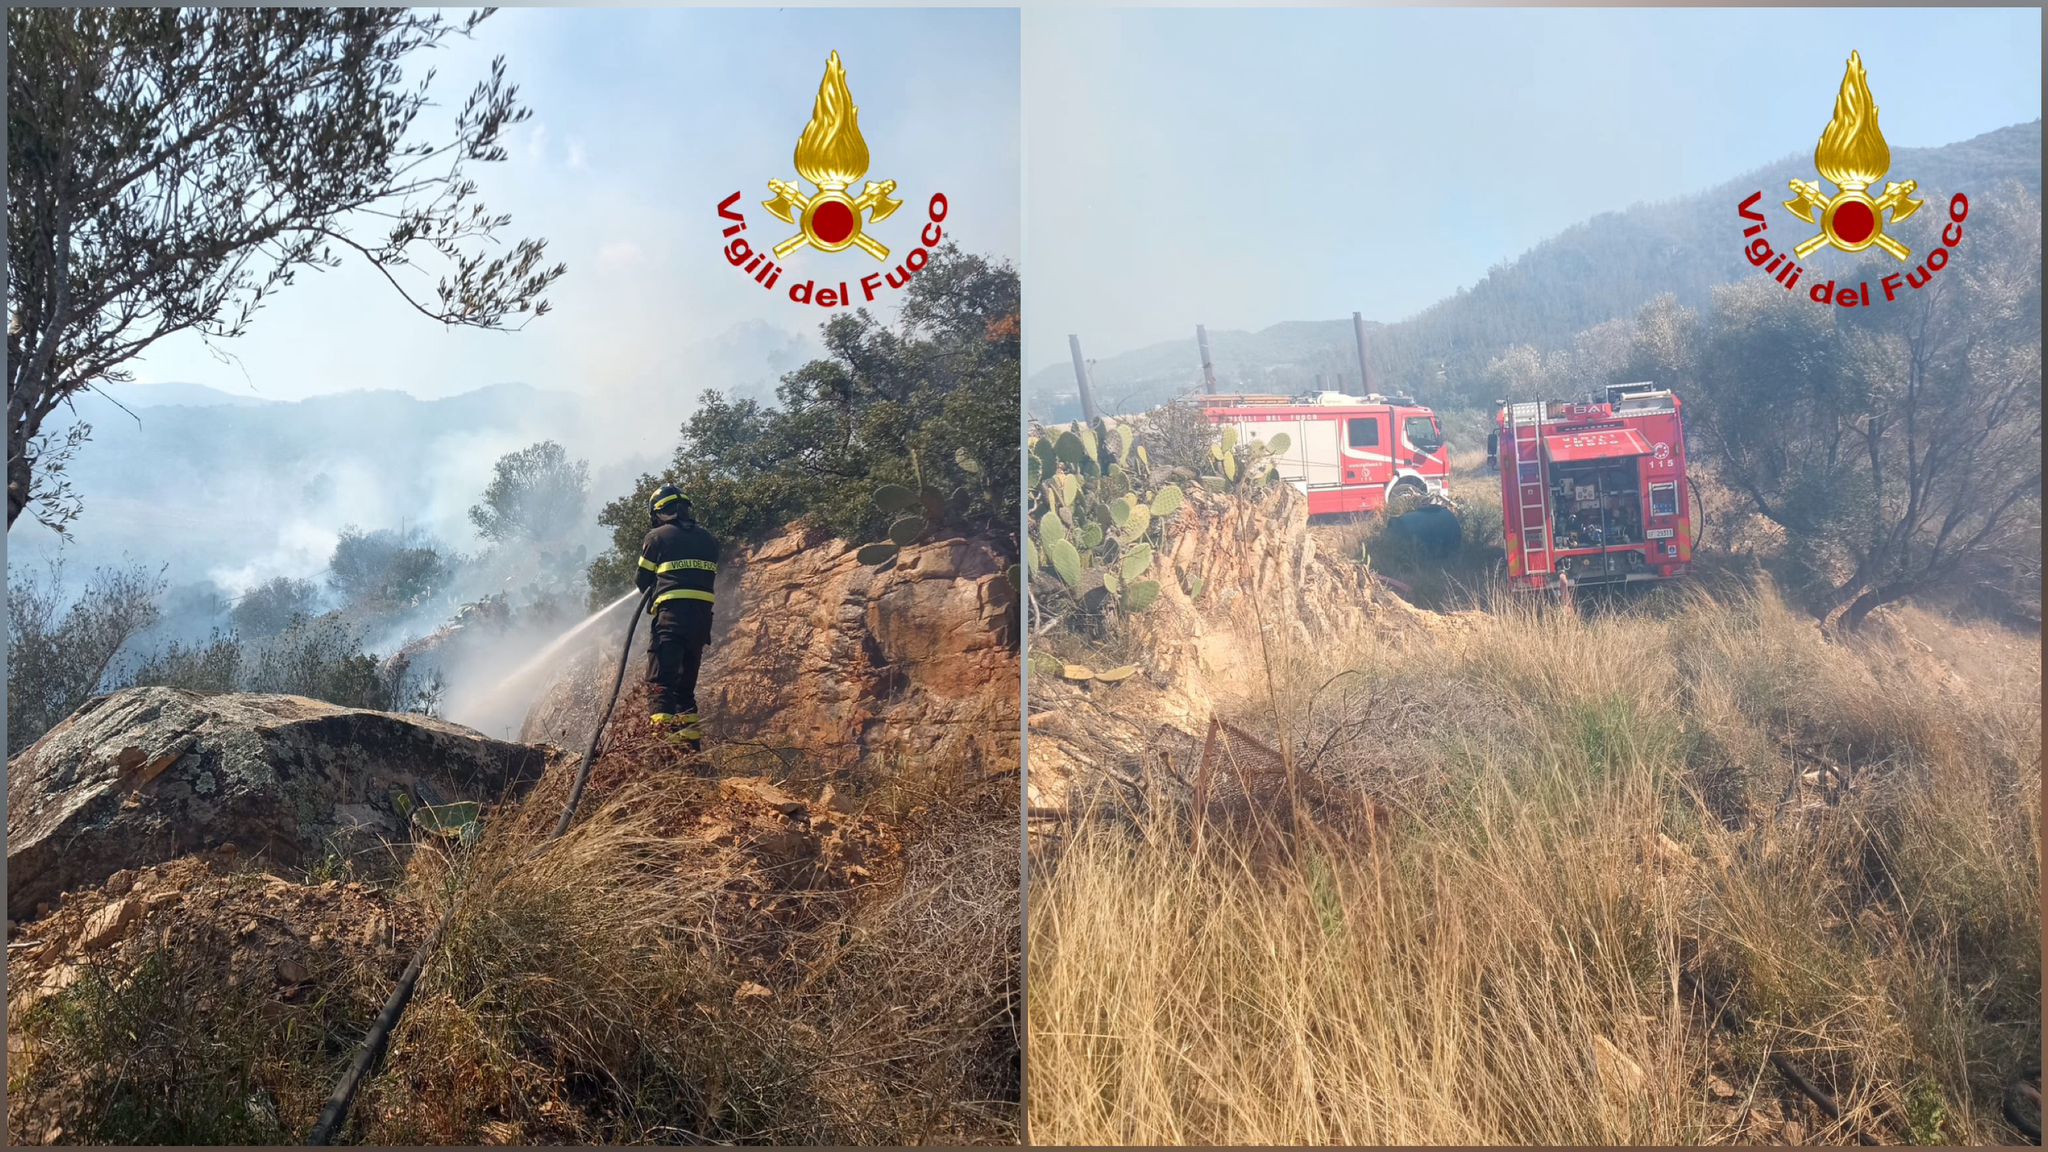 Sardegna brucia, incendi di vegetazione: ore di lavoro per i vigili del fuoco